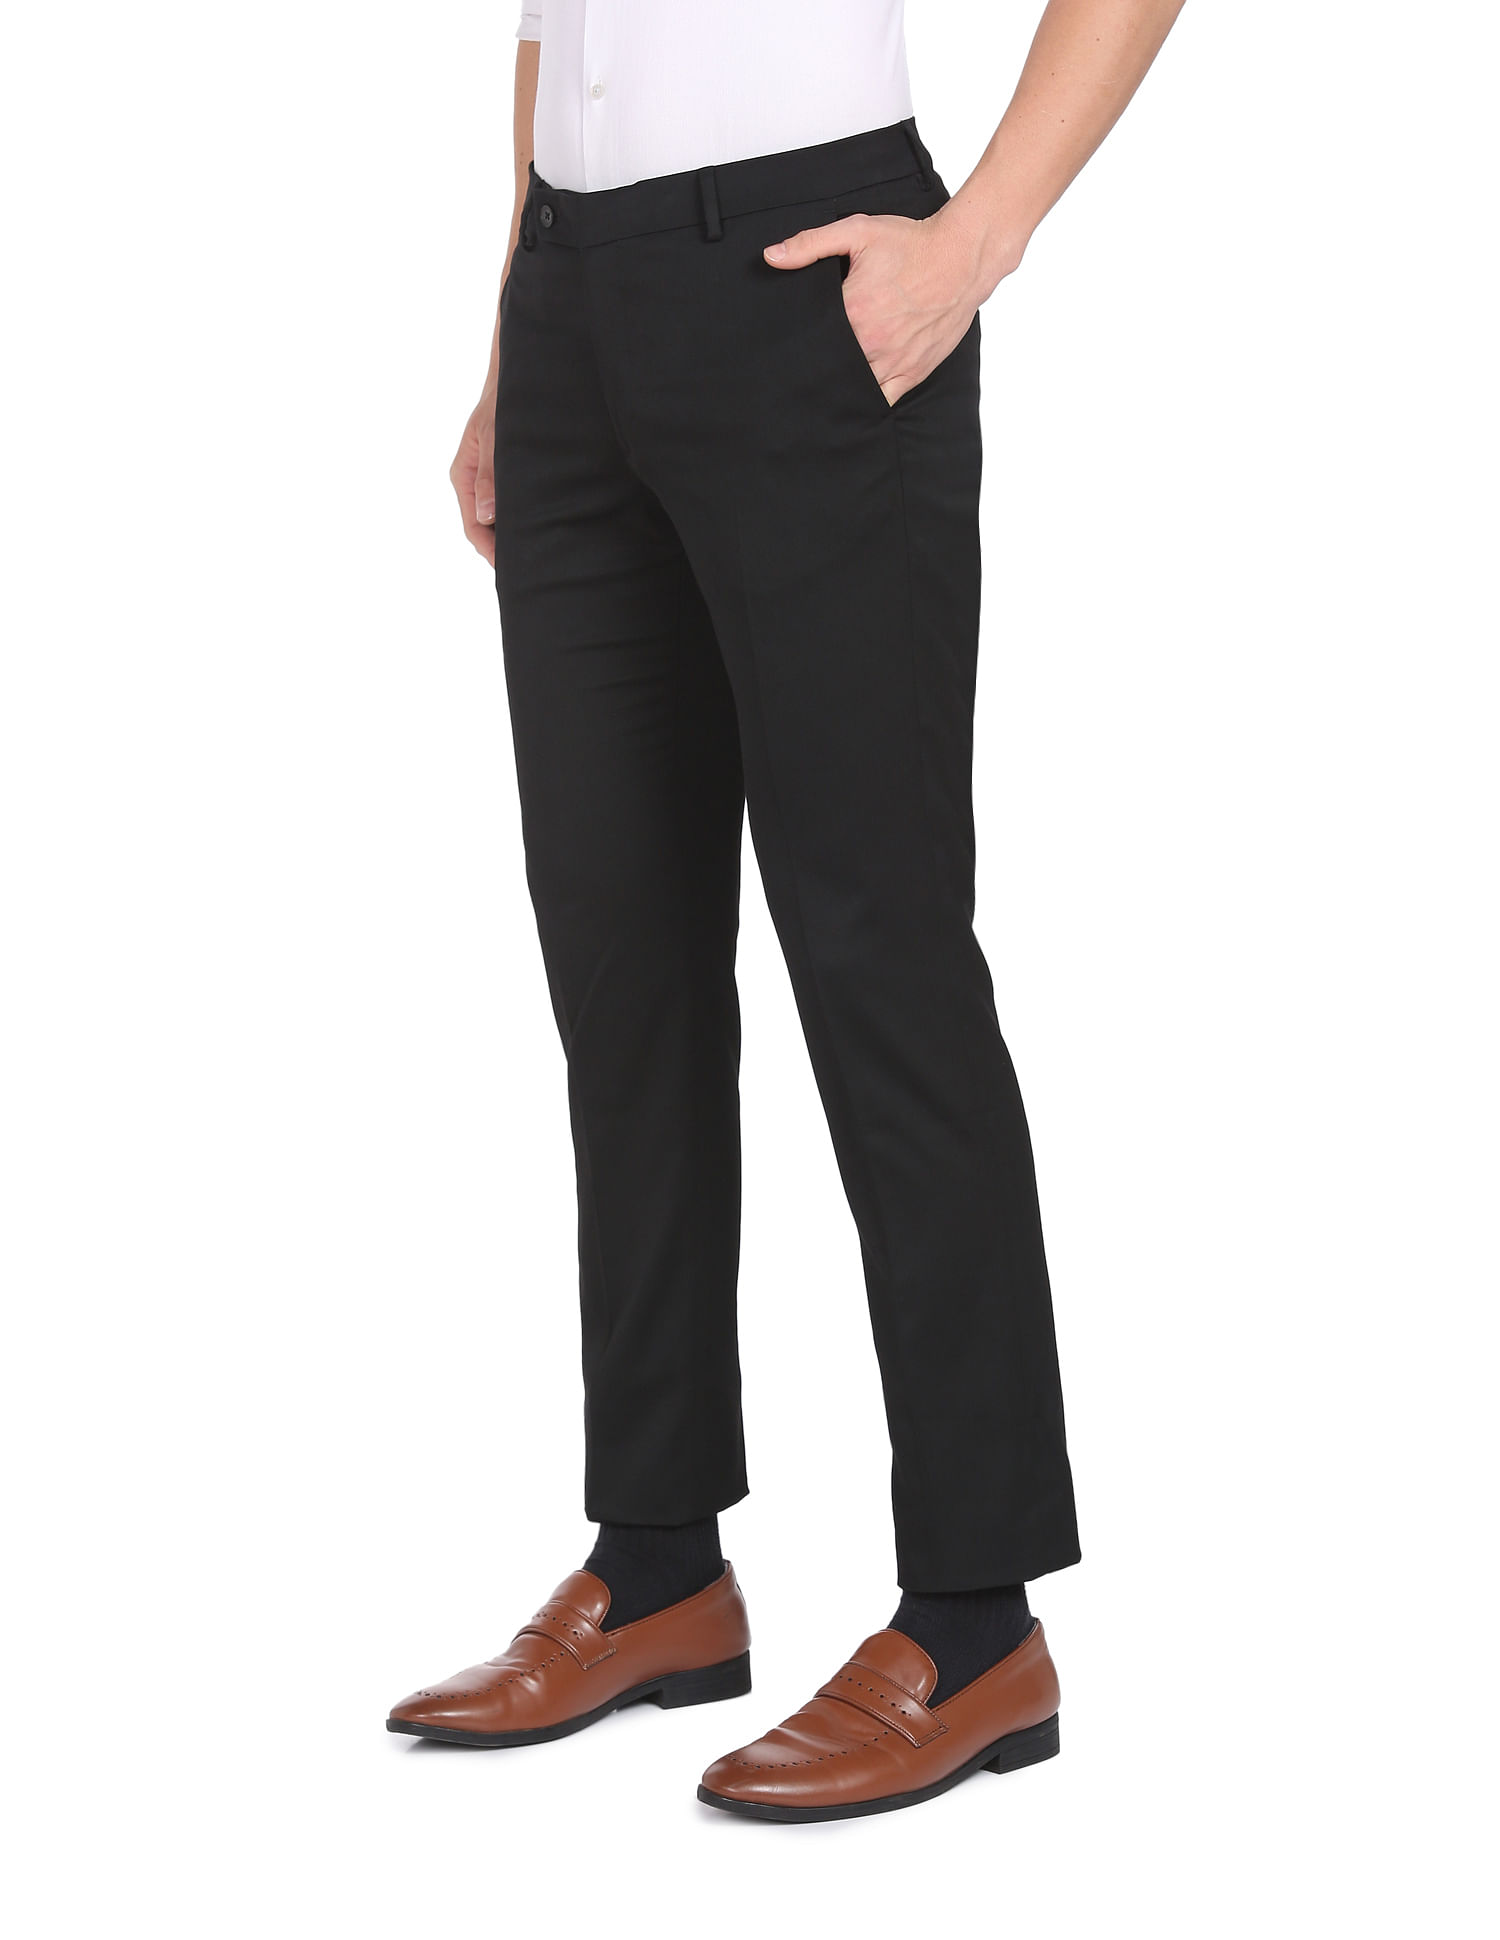 Men's Suit Pants Trouser Suit Pants For Men Fashion Plain Slimfit Formal  Korean Casual Office Trendy Ankle Cut Business Working Pants For Men |  Lazada PH